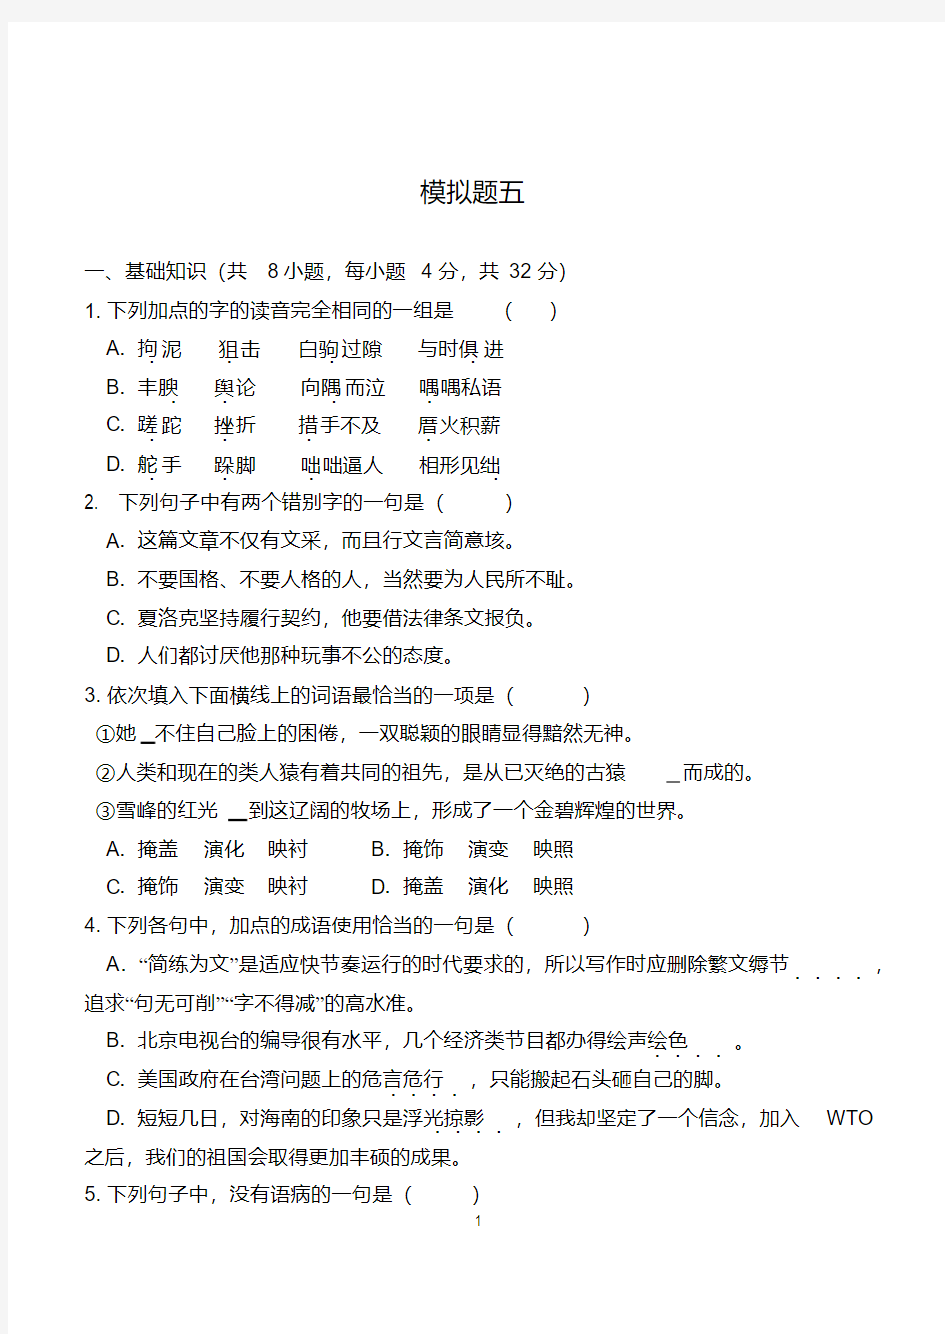 (完整版)2018年重庆对口高职升学考试语文模拟题五